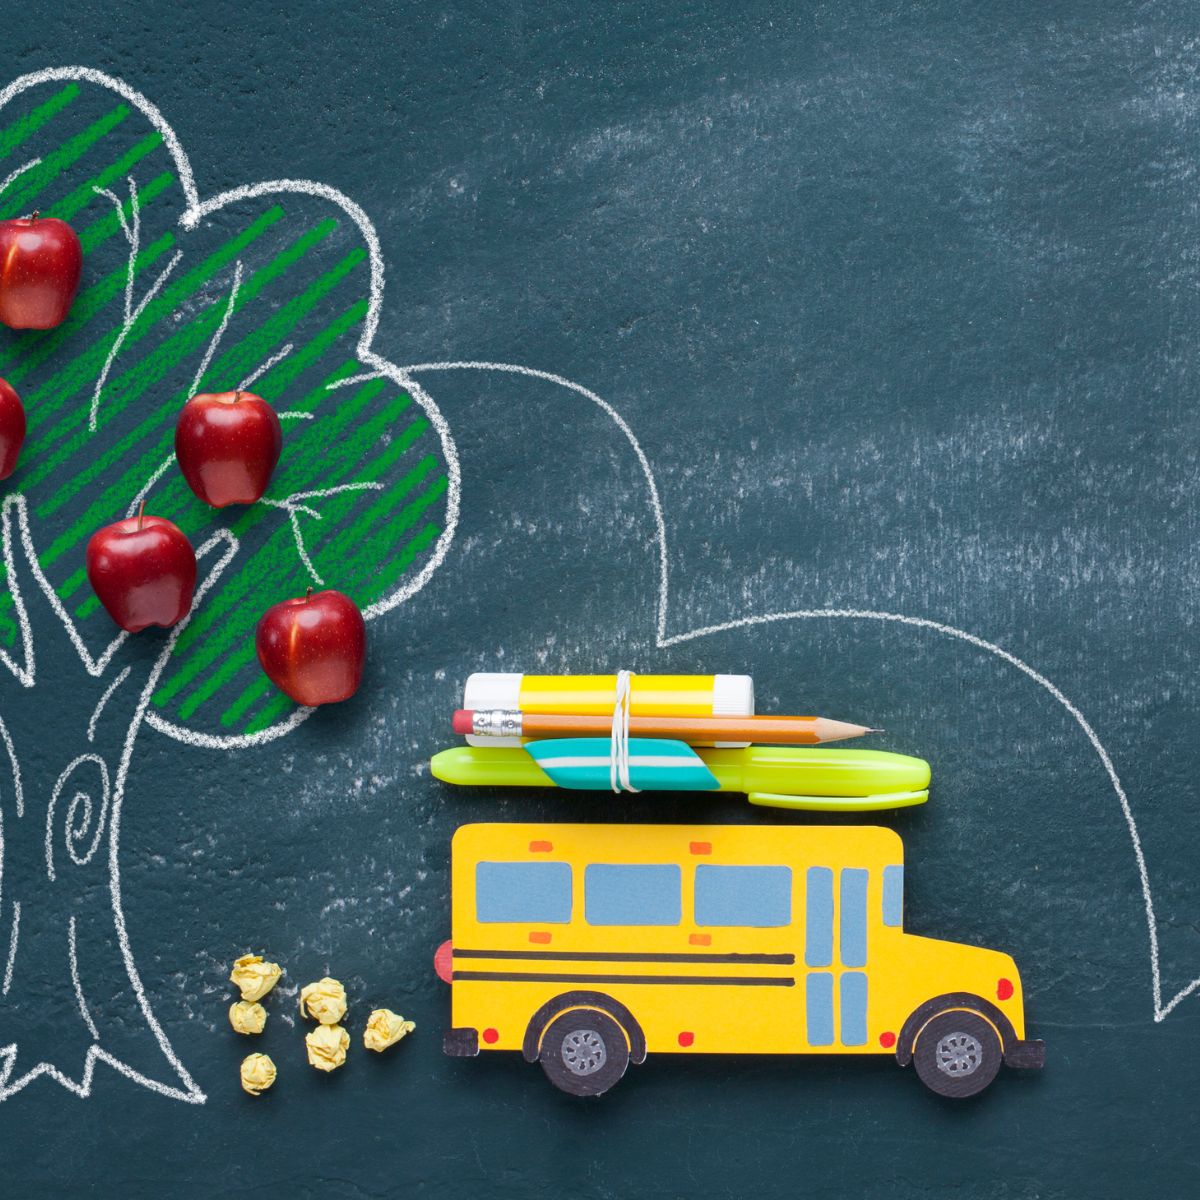 School bus on chalkboard with apple tree